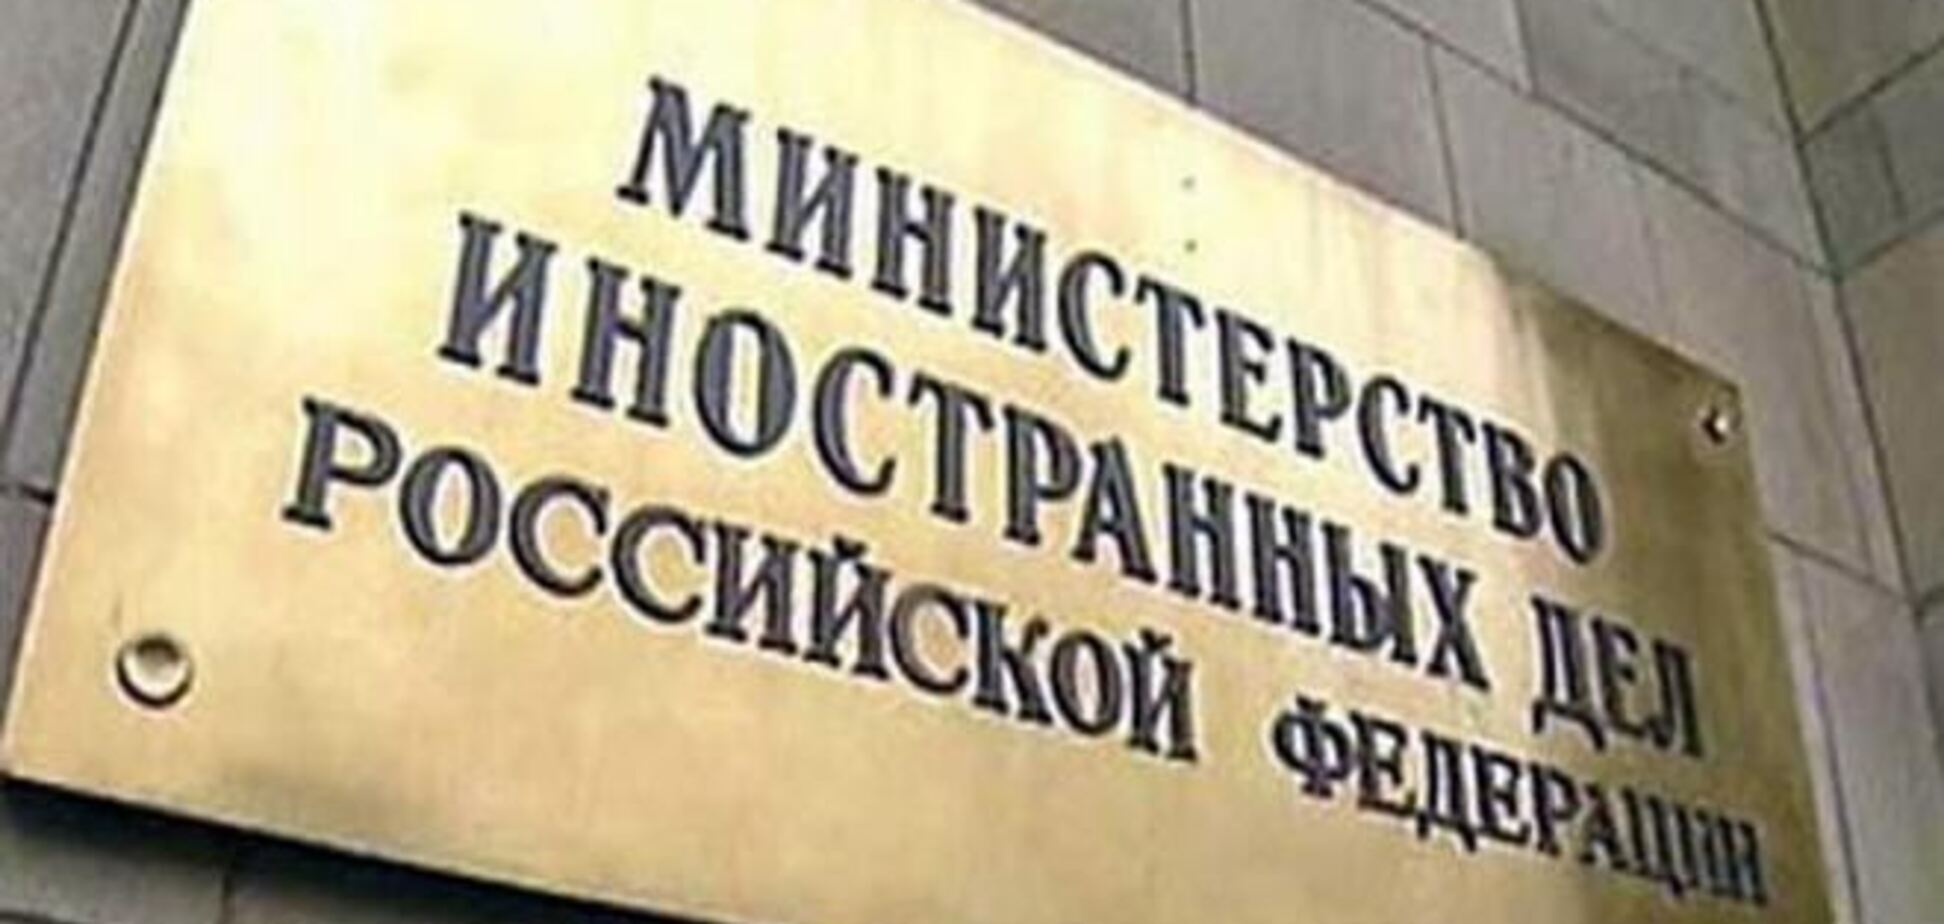  МЗС Росії стурбований напруженій ситуацією в Україні